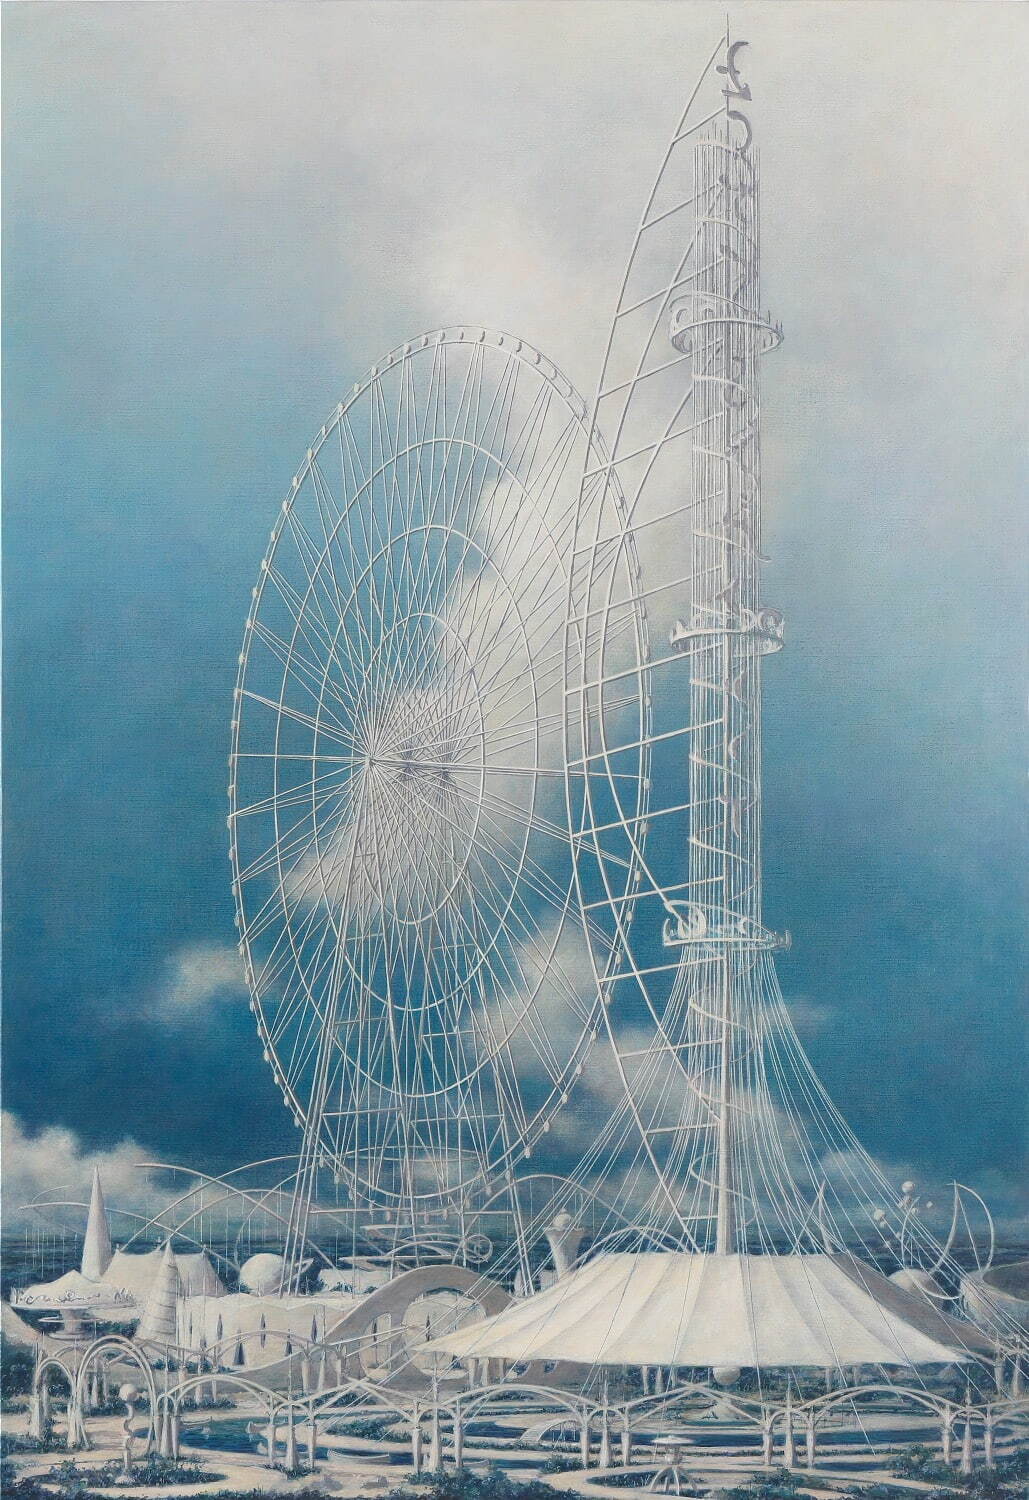 野又穫 《Imagine-2》 2018年
アクリル絵具、キャンバス 130.5×89.5cm
作家蔵 photo: 木奥恵三